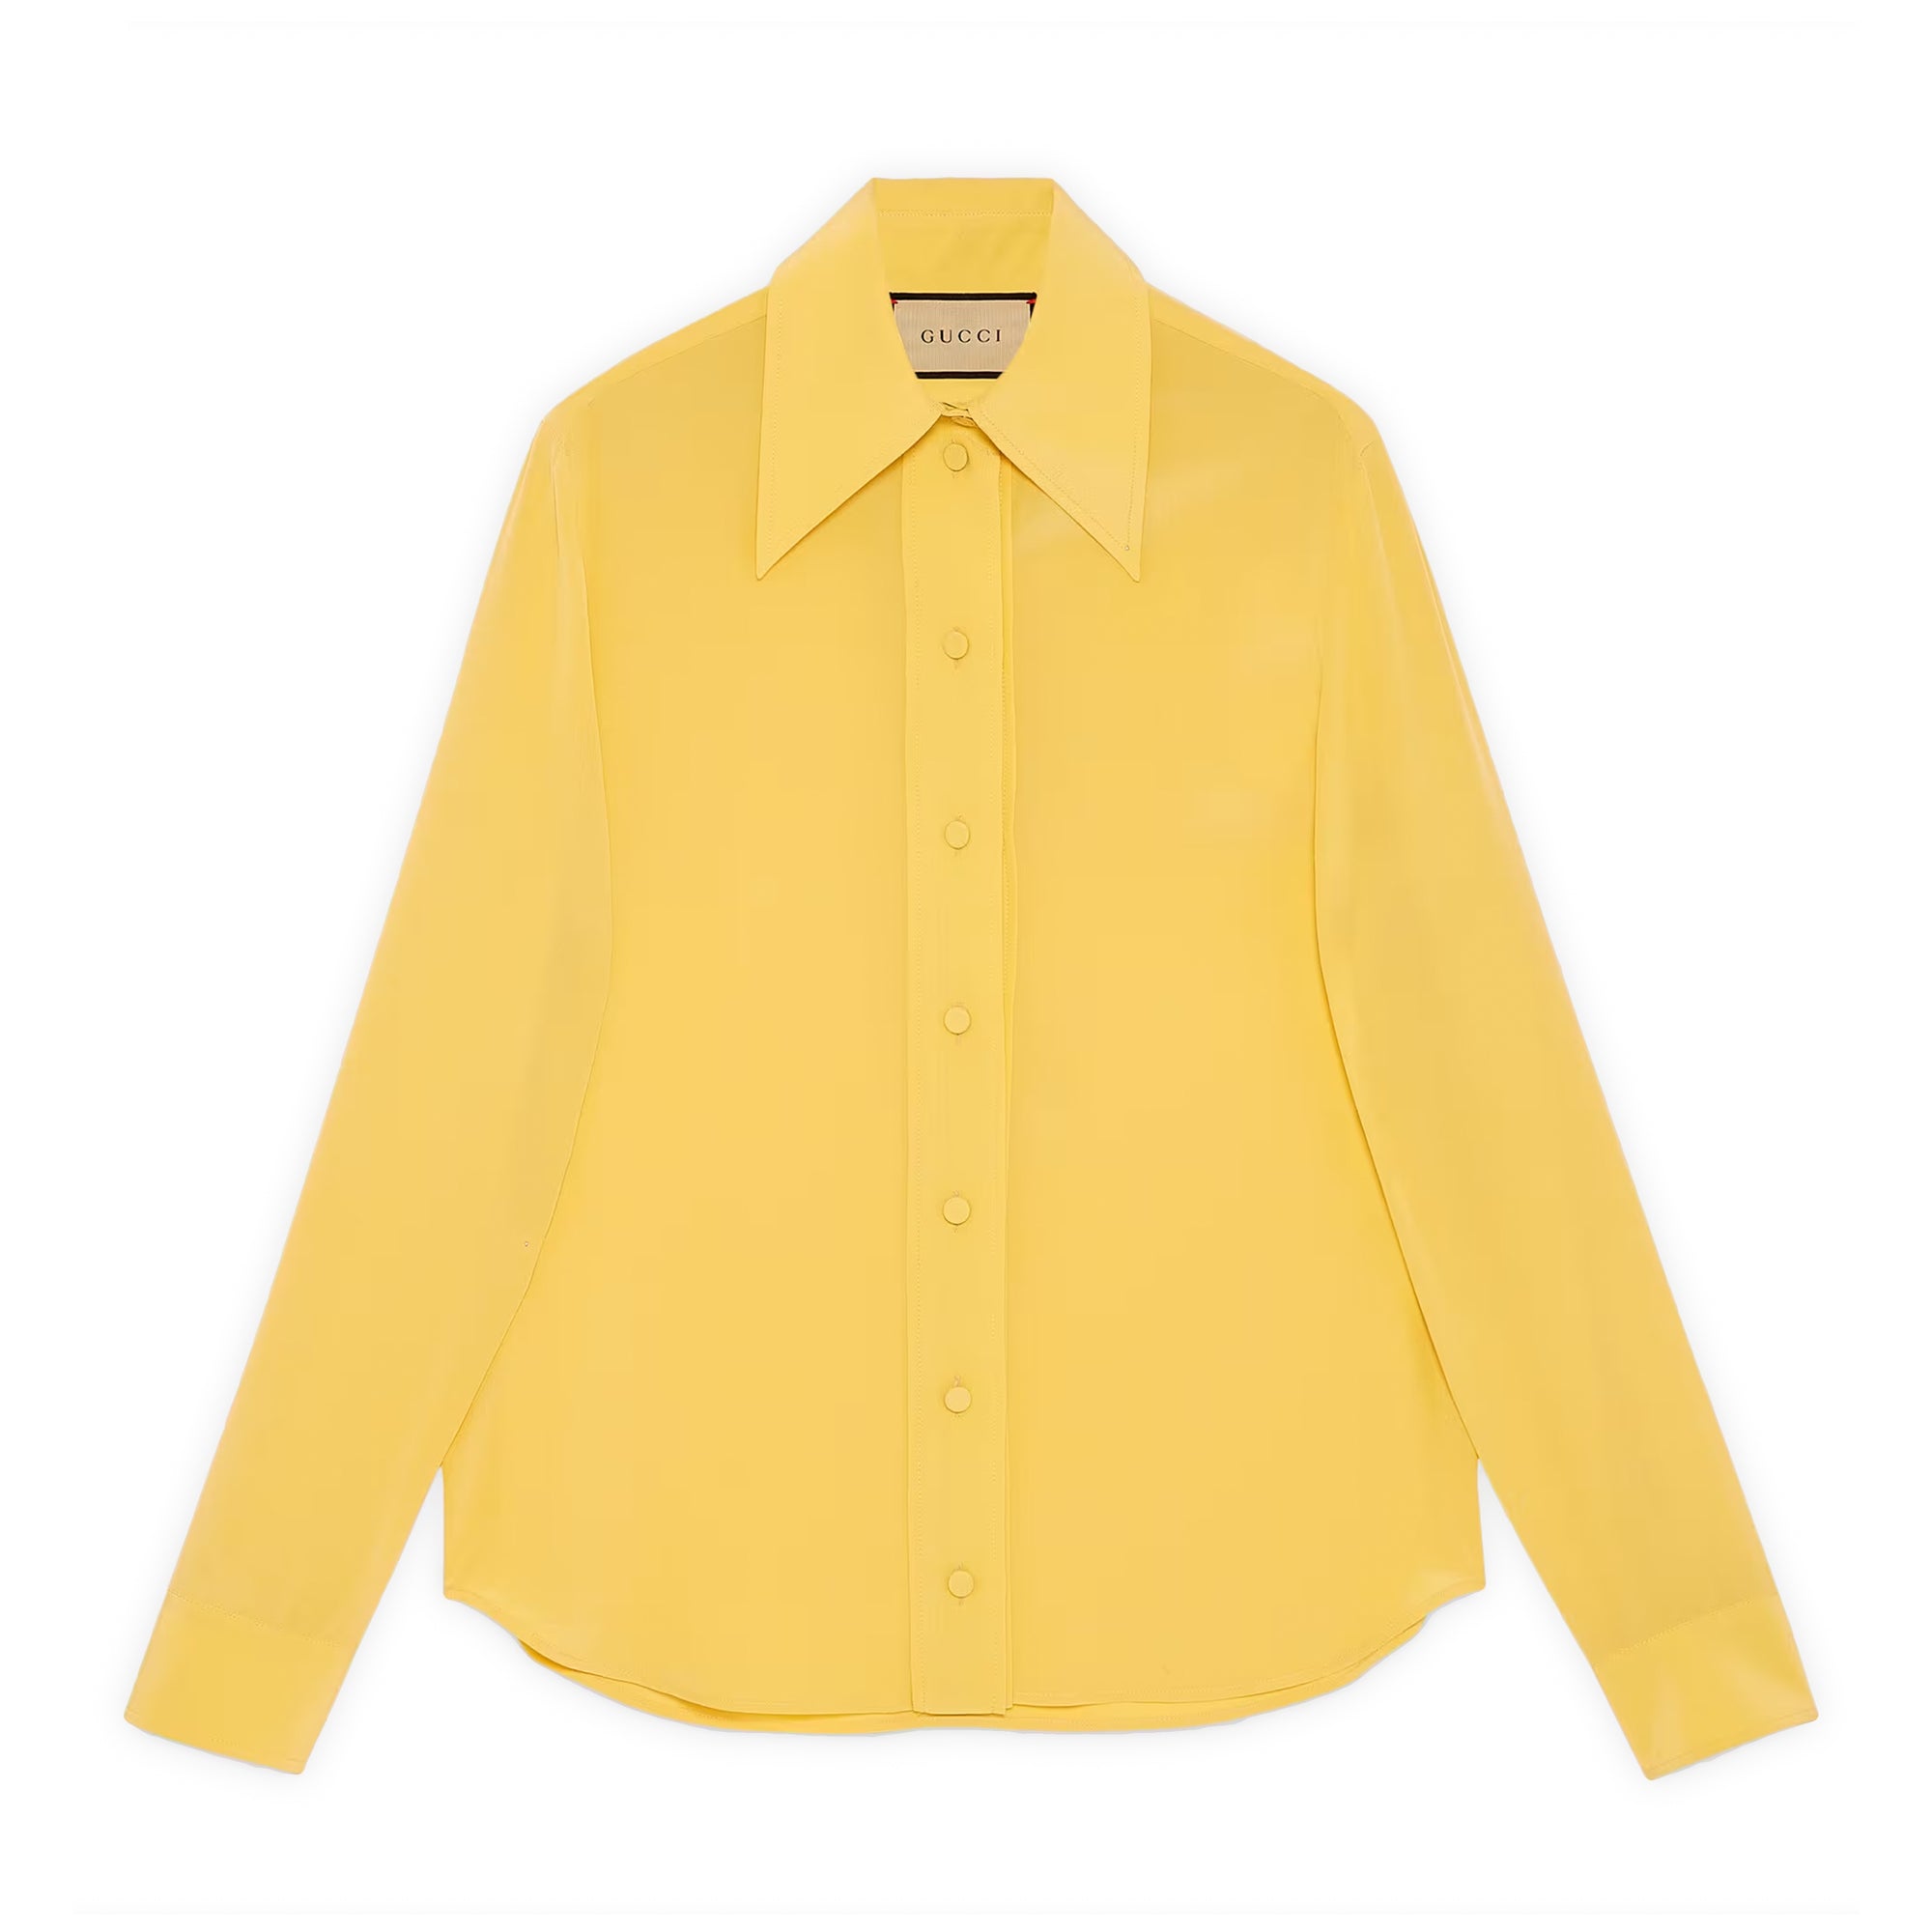 Gucci - Women’s Silk Crêpe De Chine Shirt - (Yellow) view 1